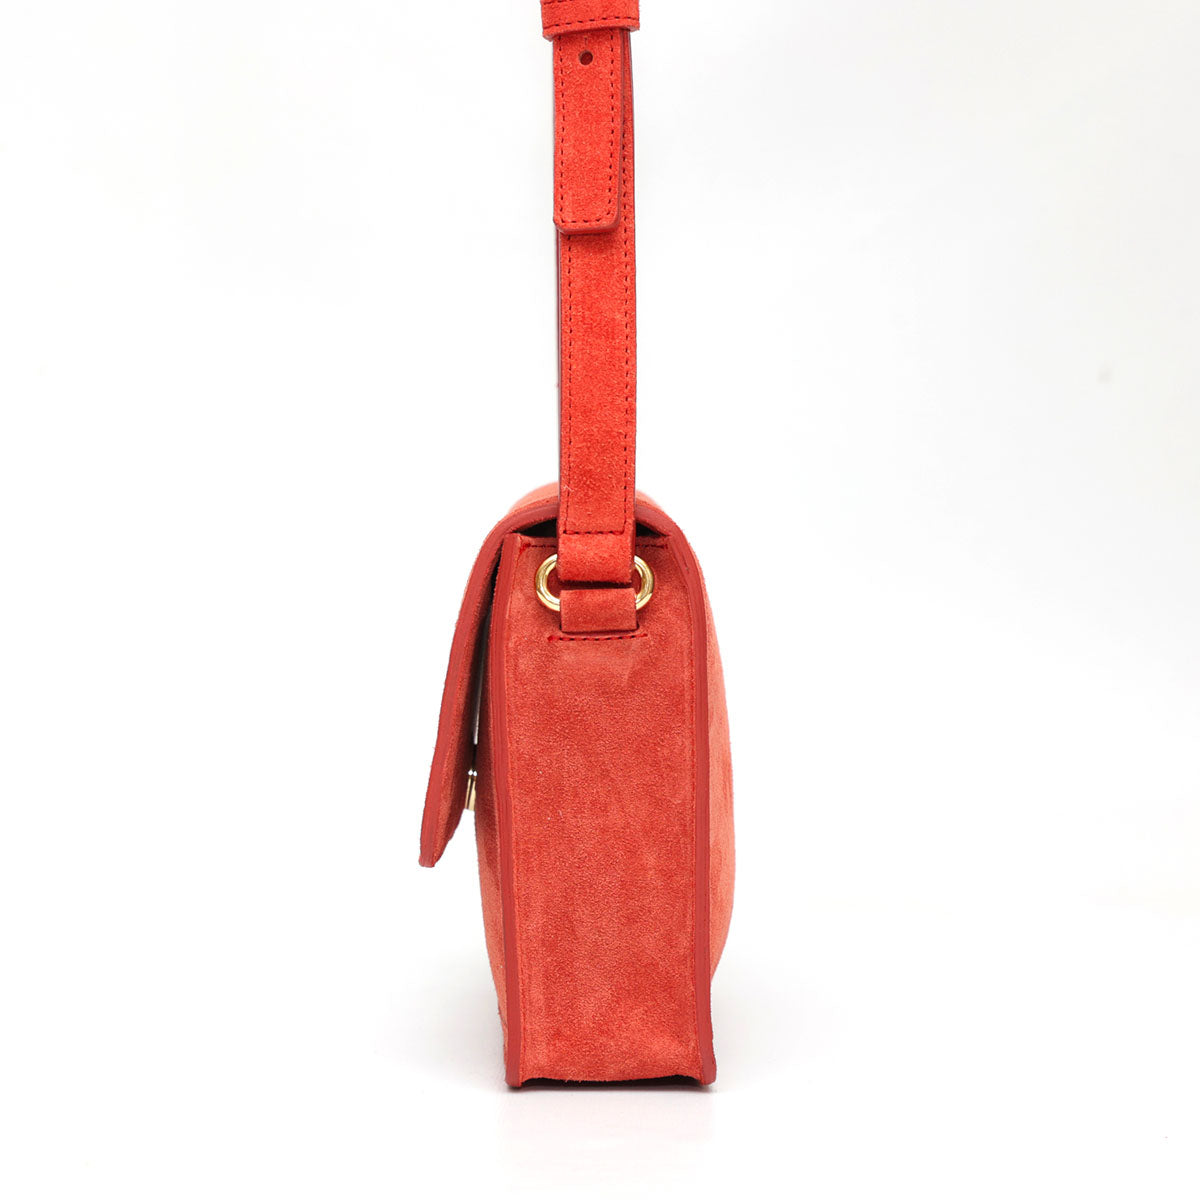 Cara bag, borsa donna a tracolla in pelle scamosciata color ruggine. Prodotta a mano da Pianigiani bags